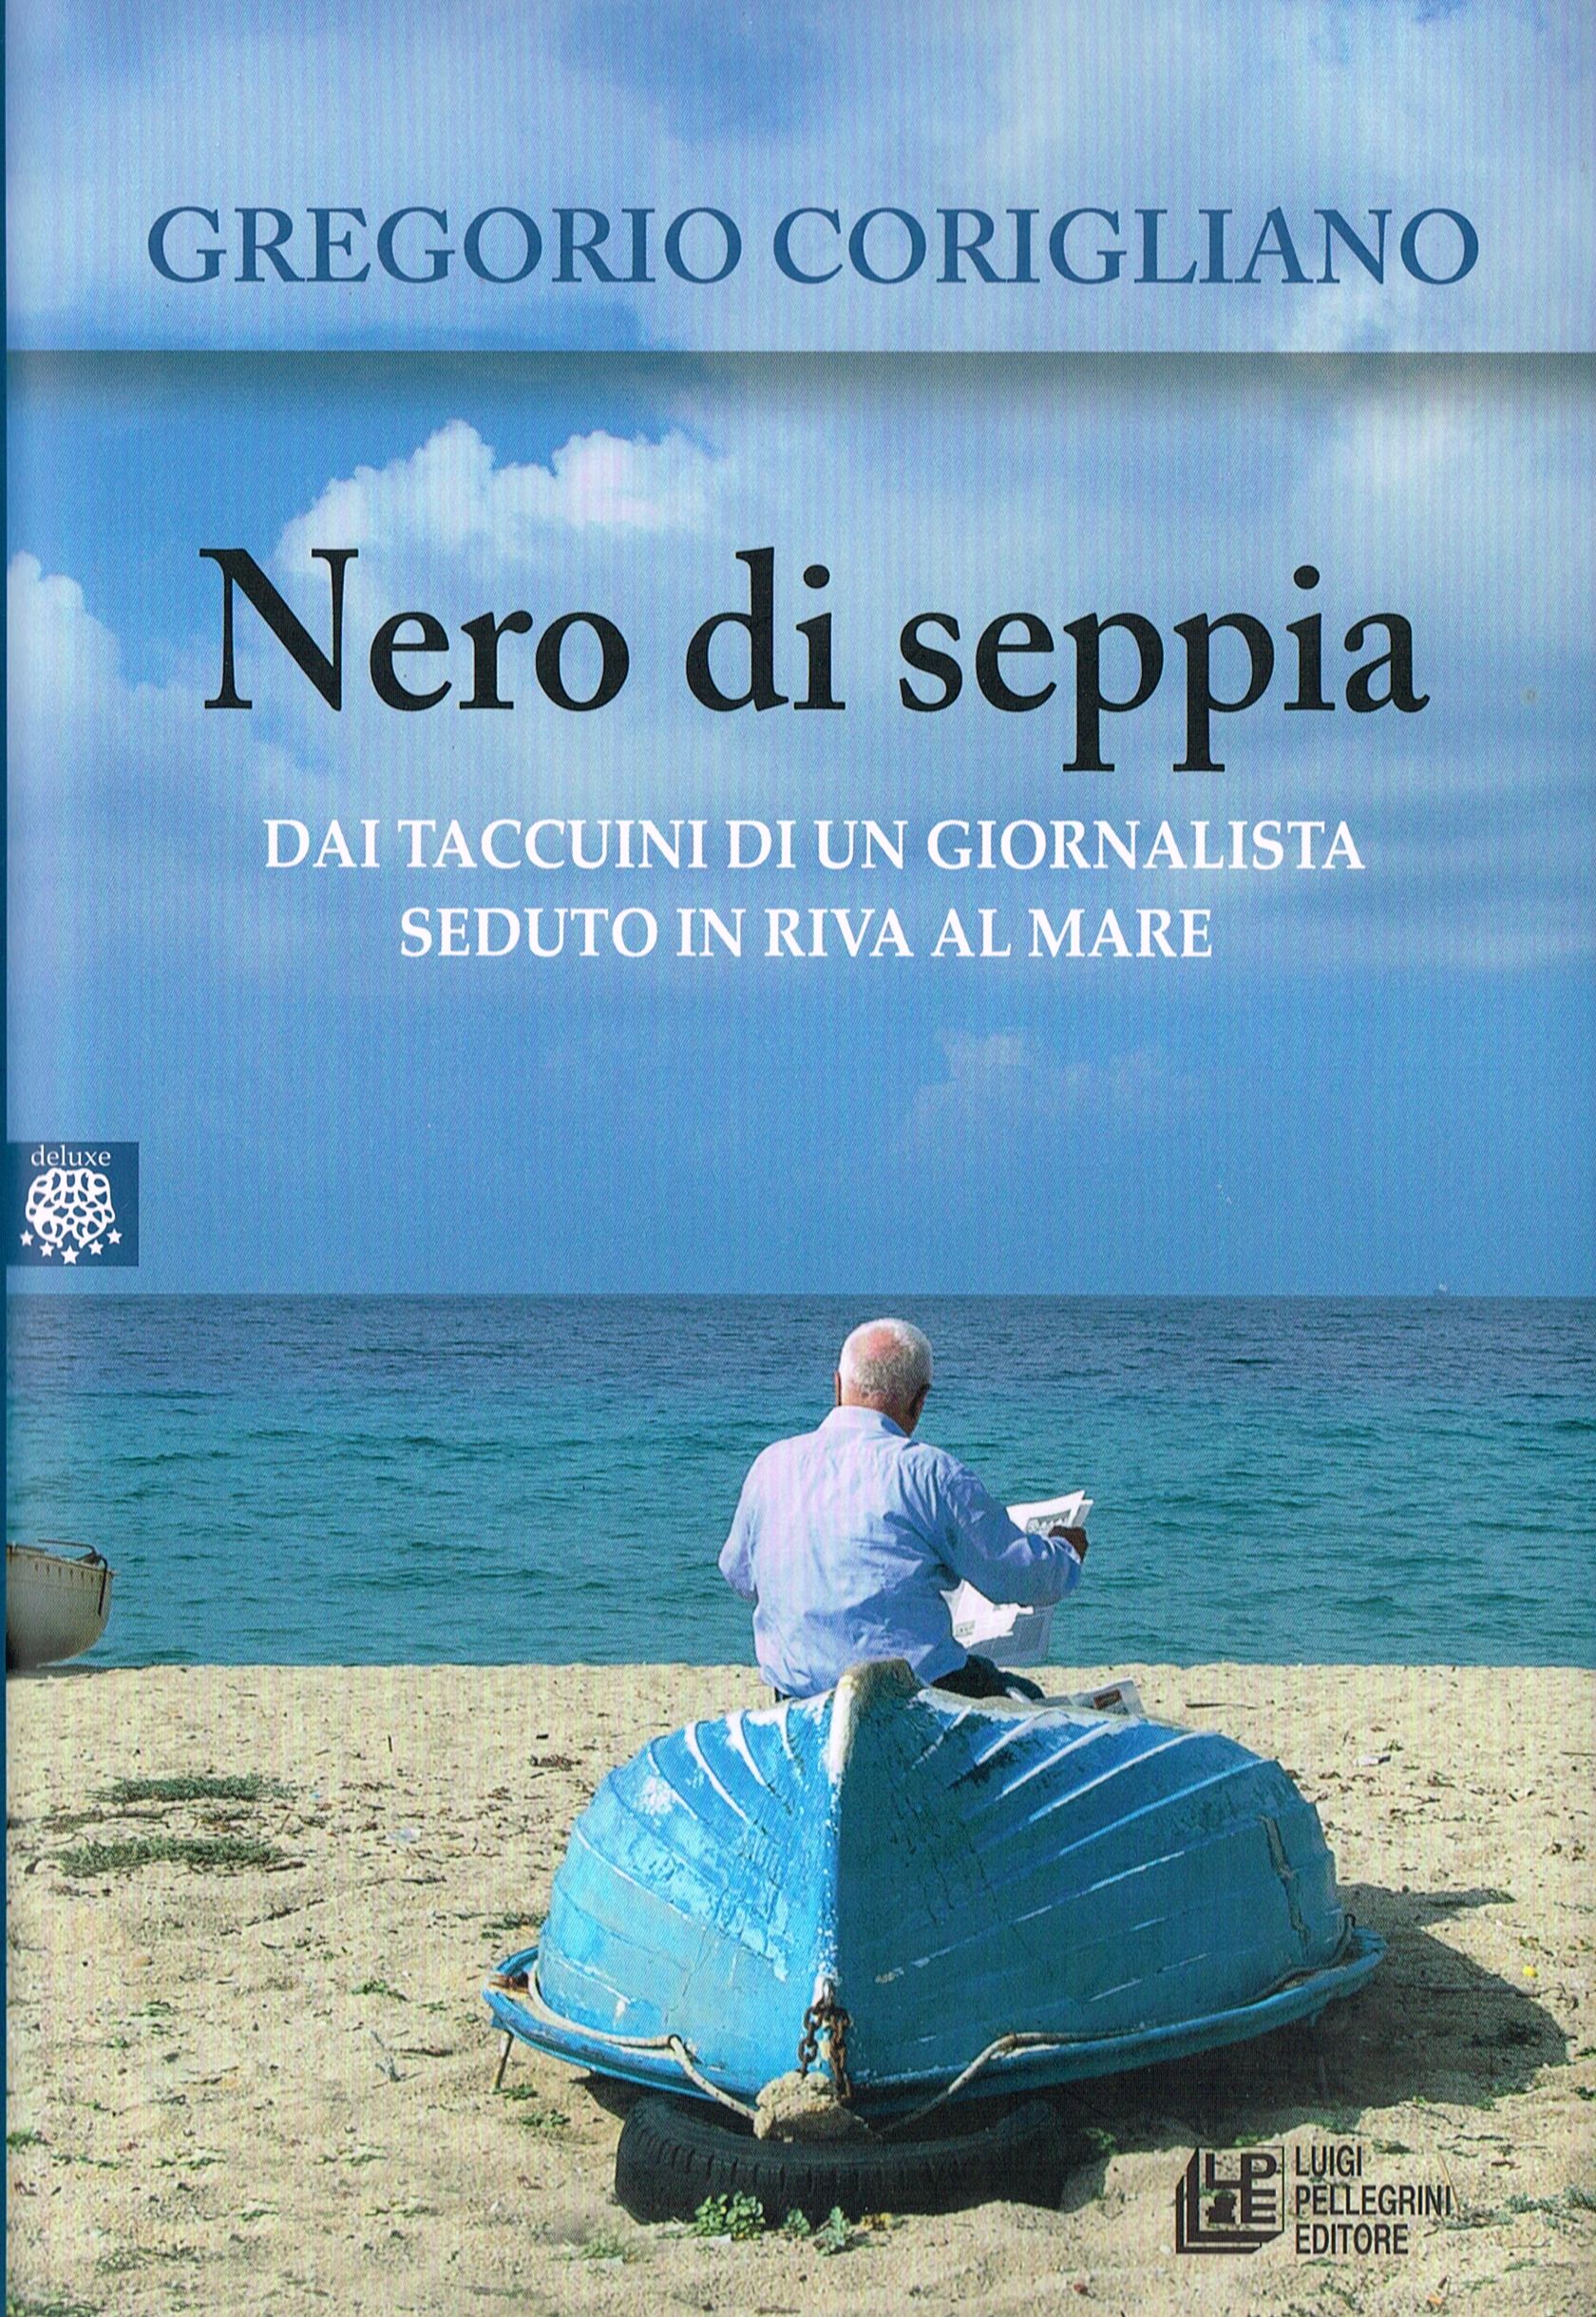 Nero di Seppia – Dai taccuini di un giornalista seduto in riva al mare